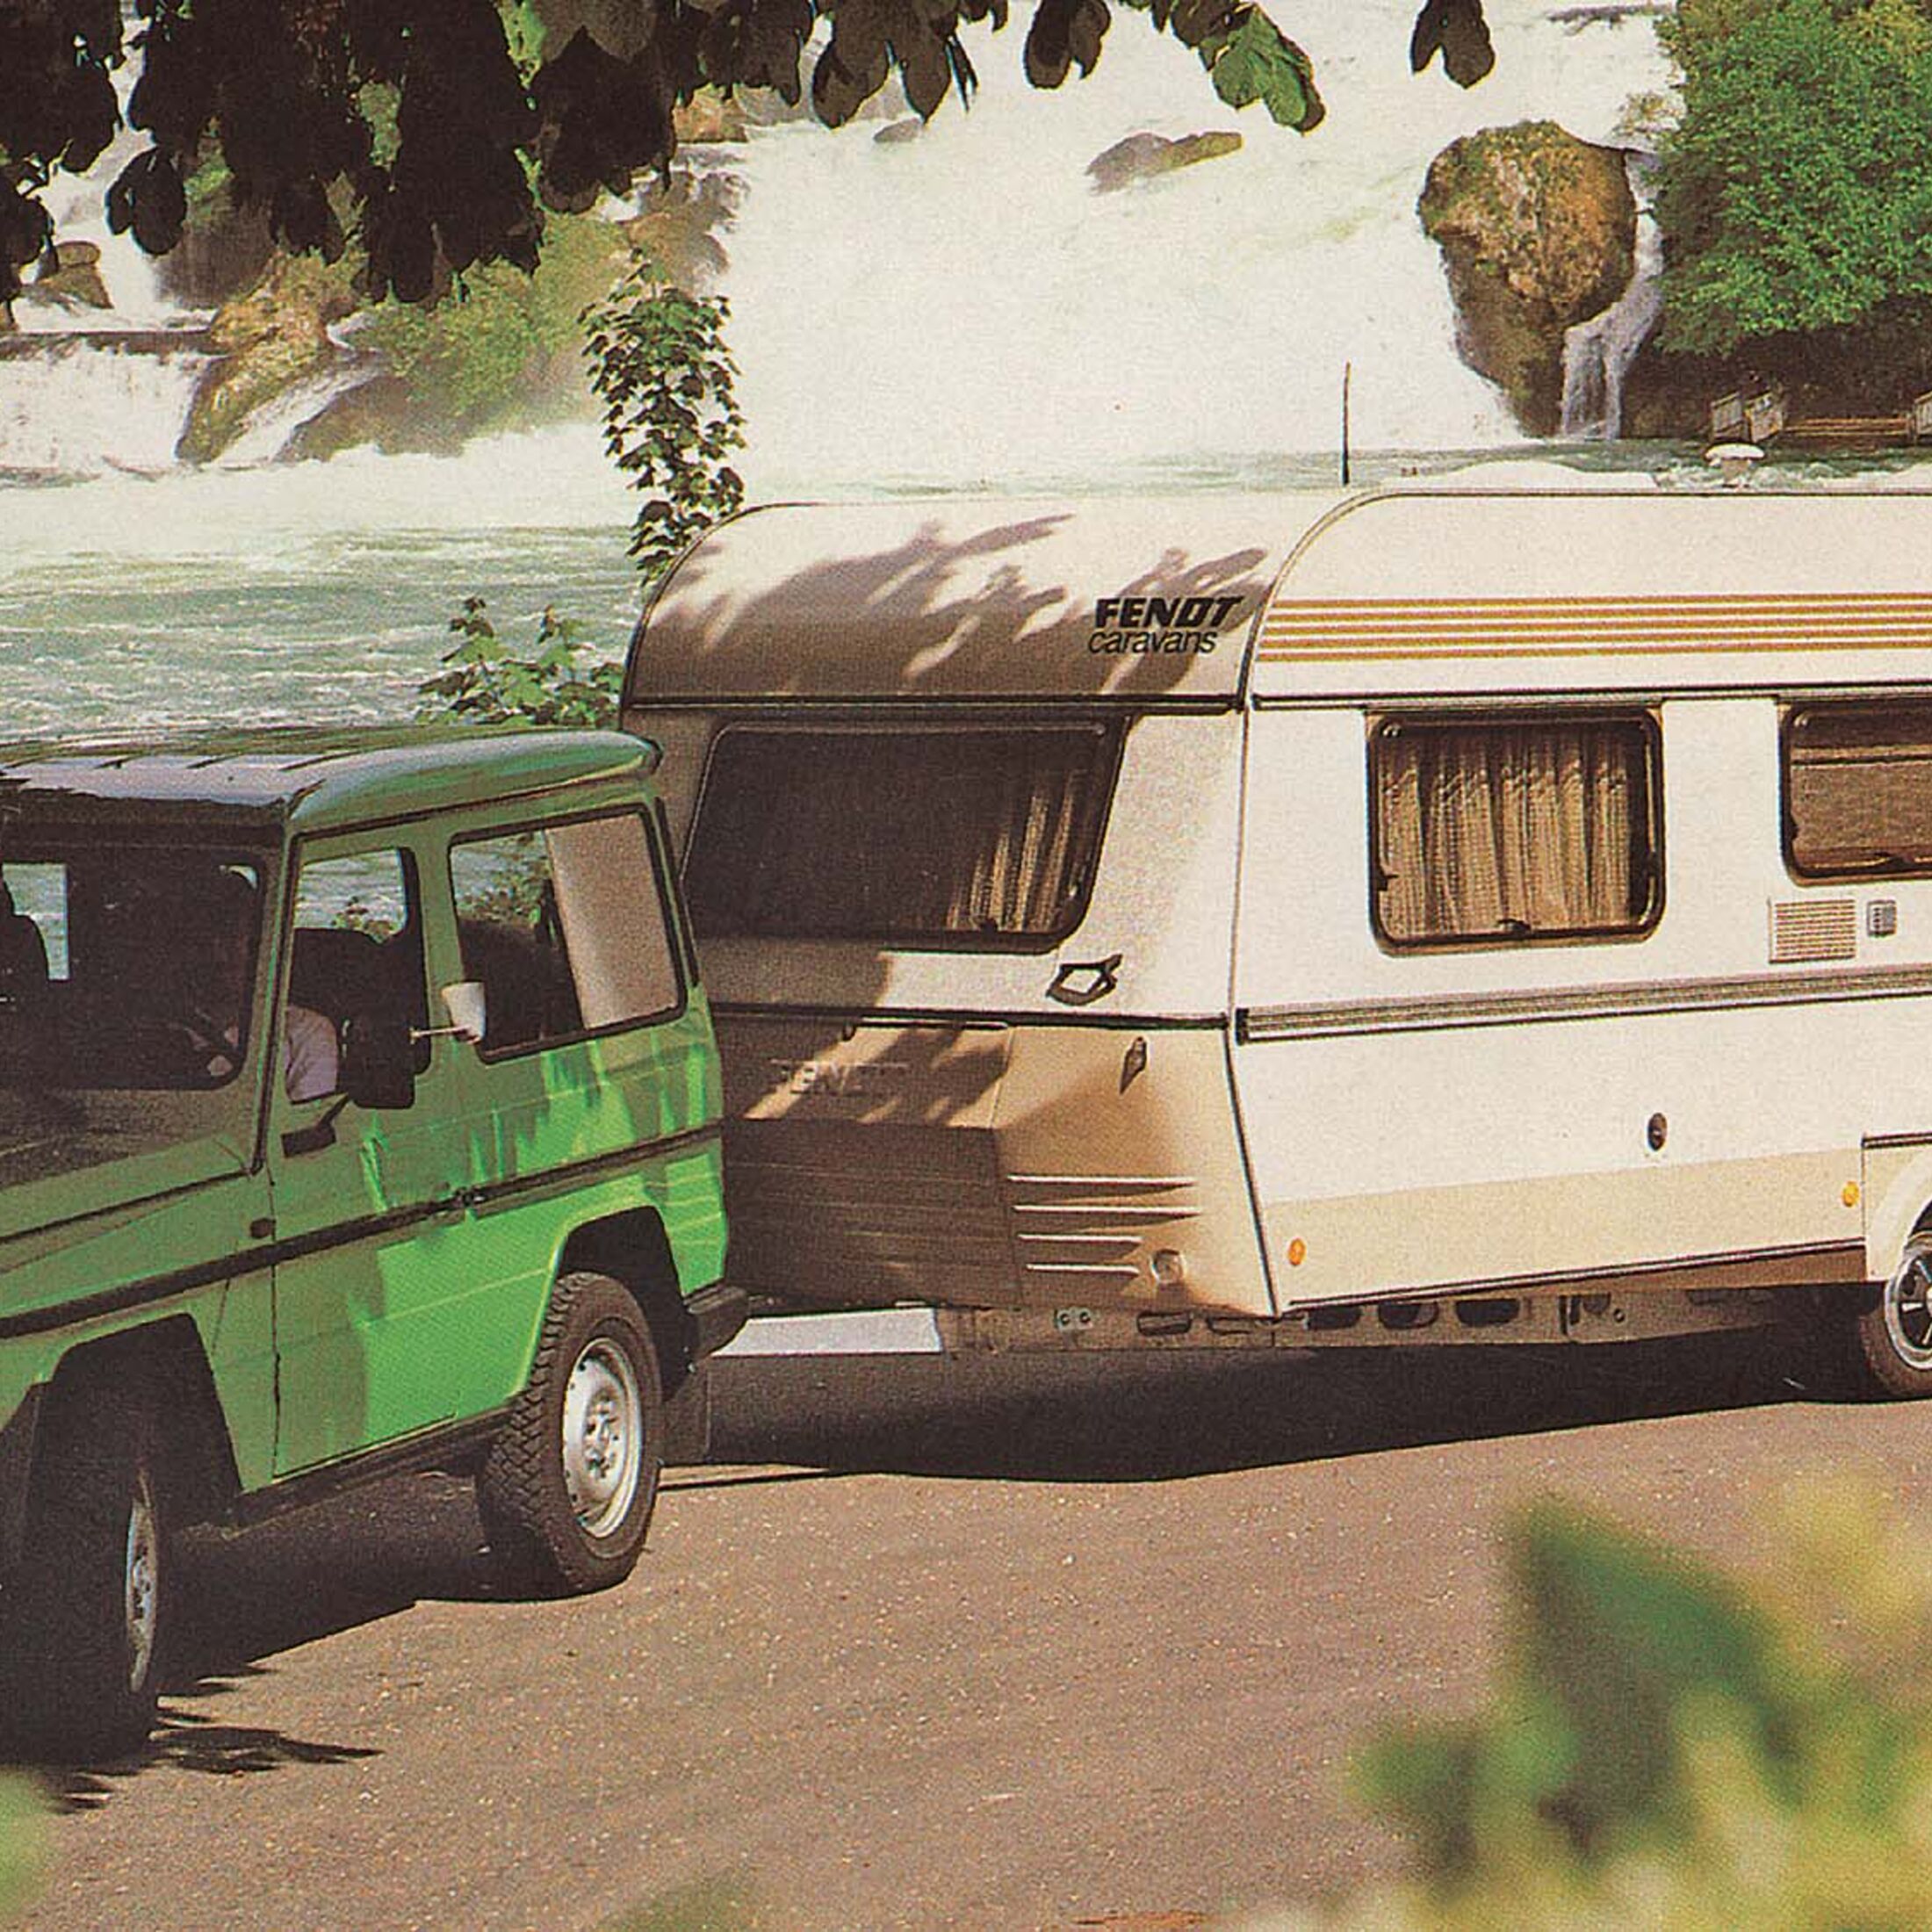 Fendt-Caravan, Wohnwagen von Fendt